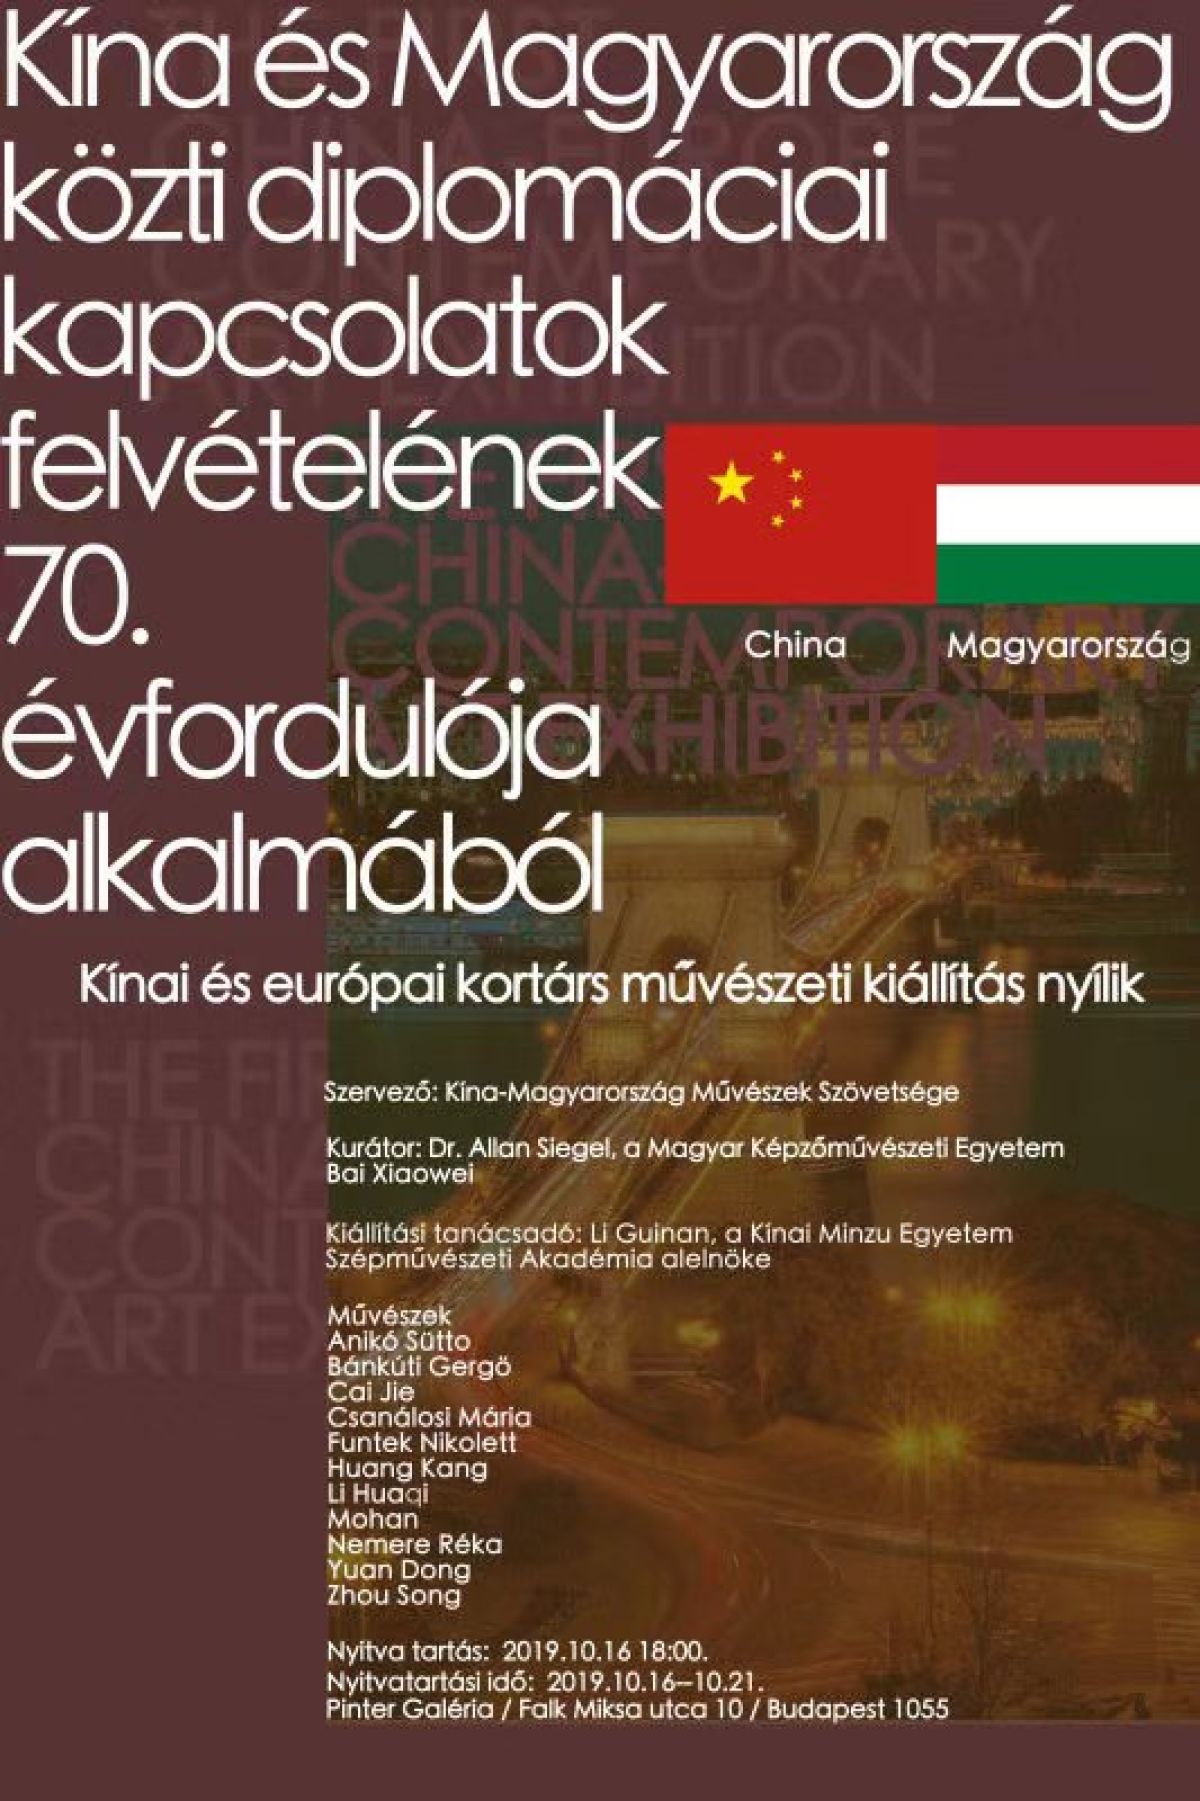 Kína és Magyarország Közti Diplomáciai Kapcsolatok Felvételének 70 évfordulója Alkalmából 8010